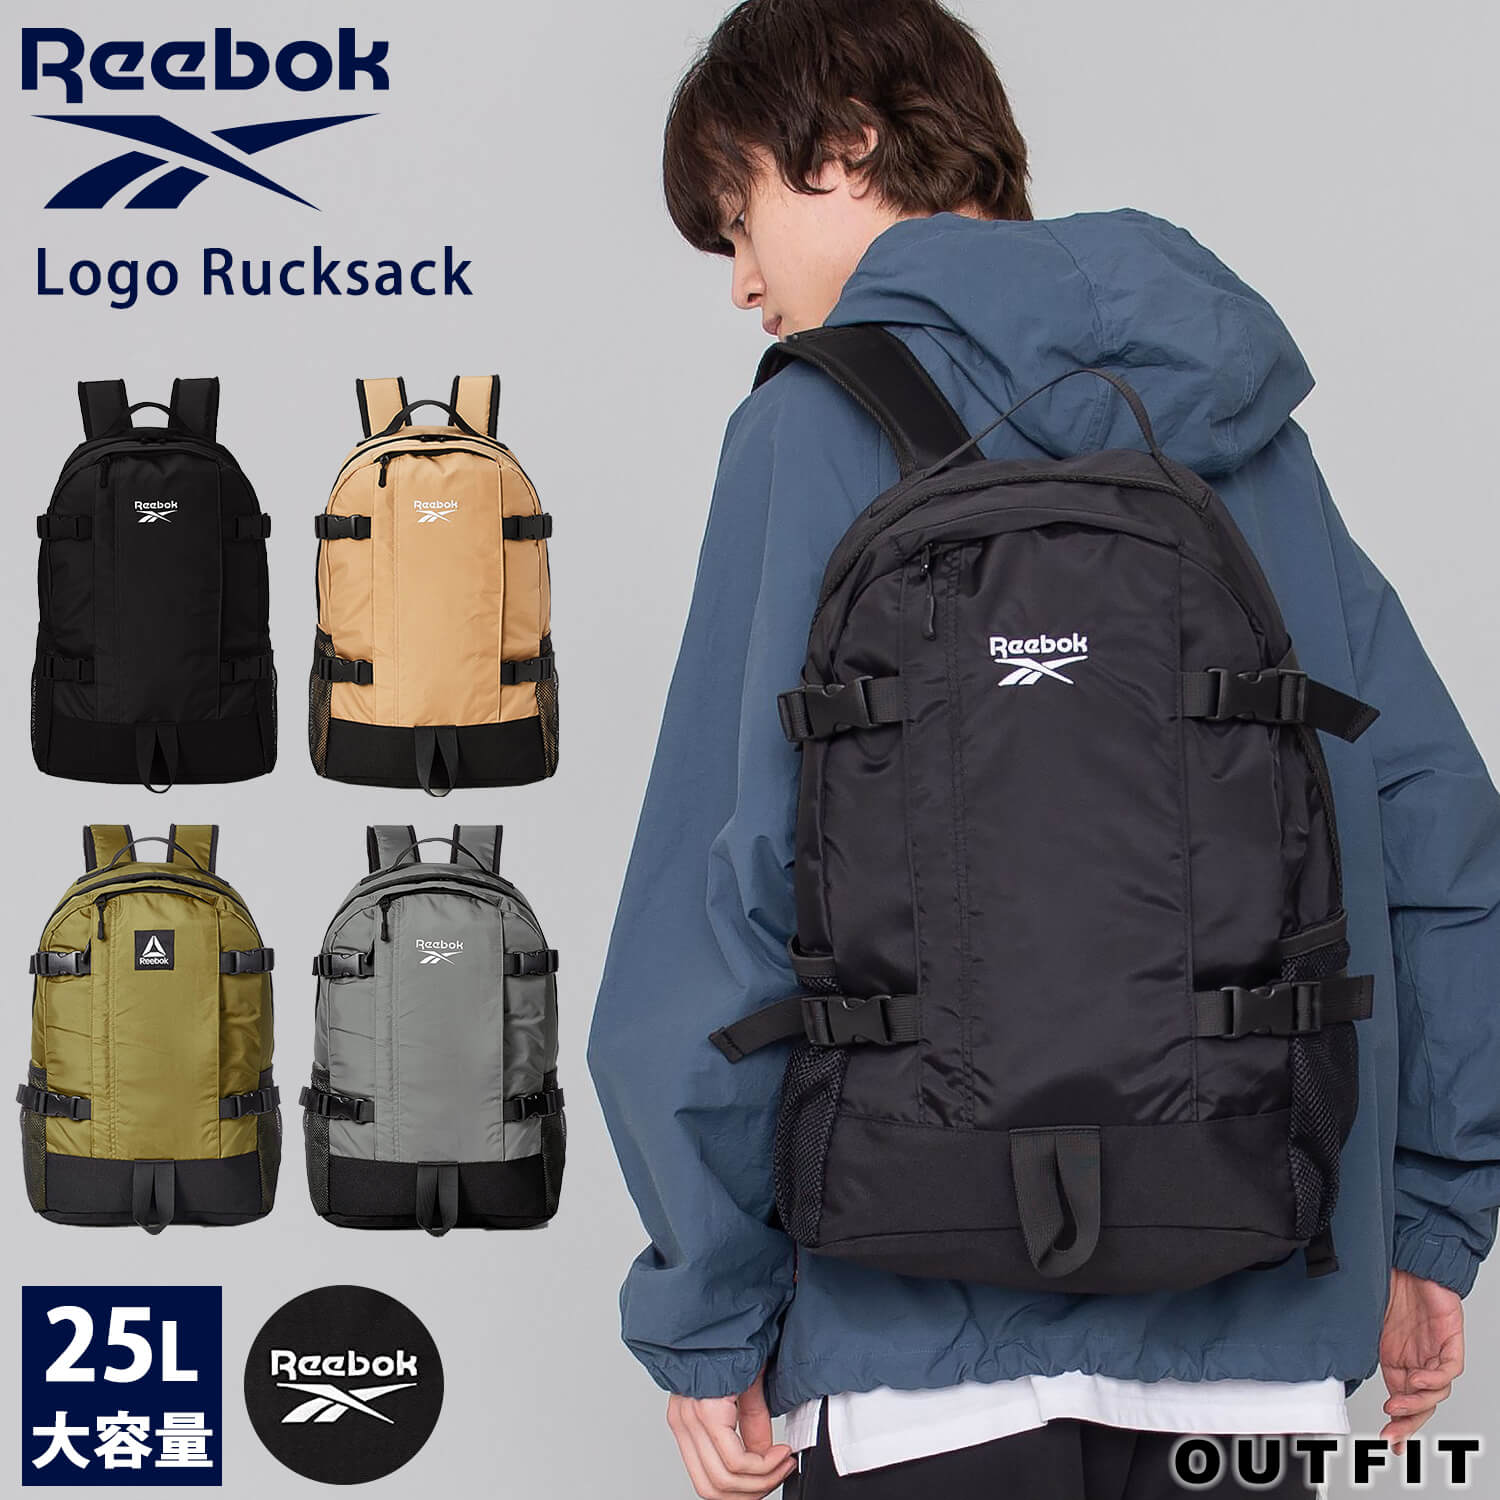 Reebokバックパック25L - スケートボード